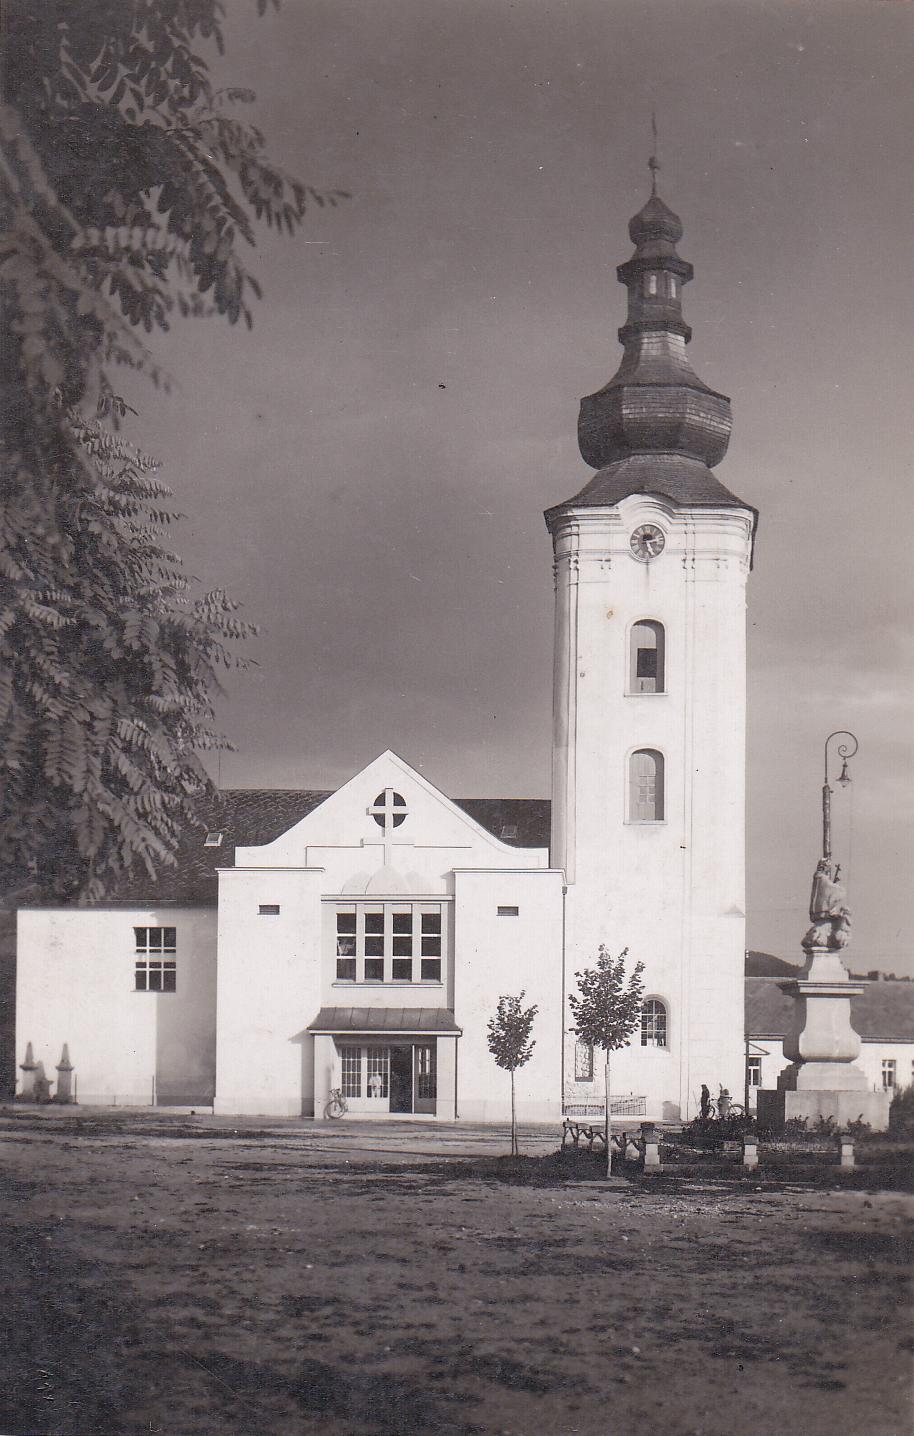 Námestie slobody v r. 1947 v Púchove: nedávno zasadené lipy a ohradenie okolo sochy sv. Jána Nepomuckého, dobové lampy,  čierne ciferníky na vežových hodinách